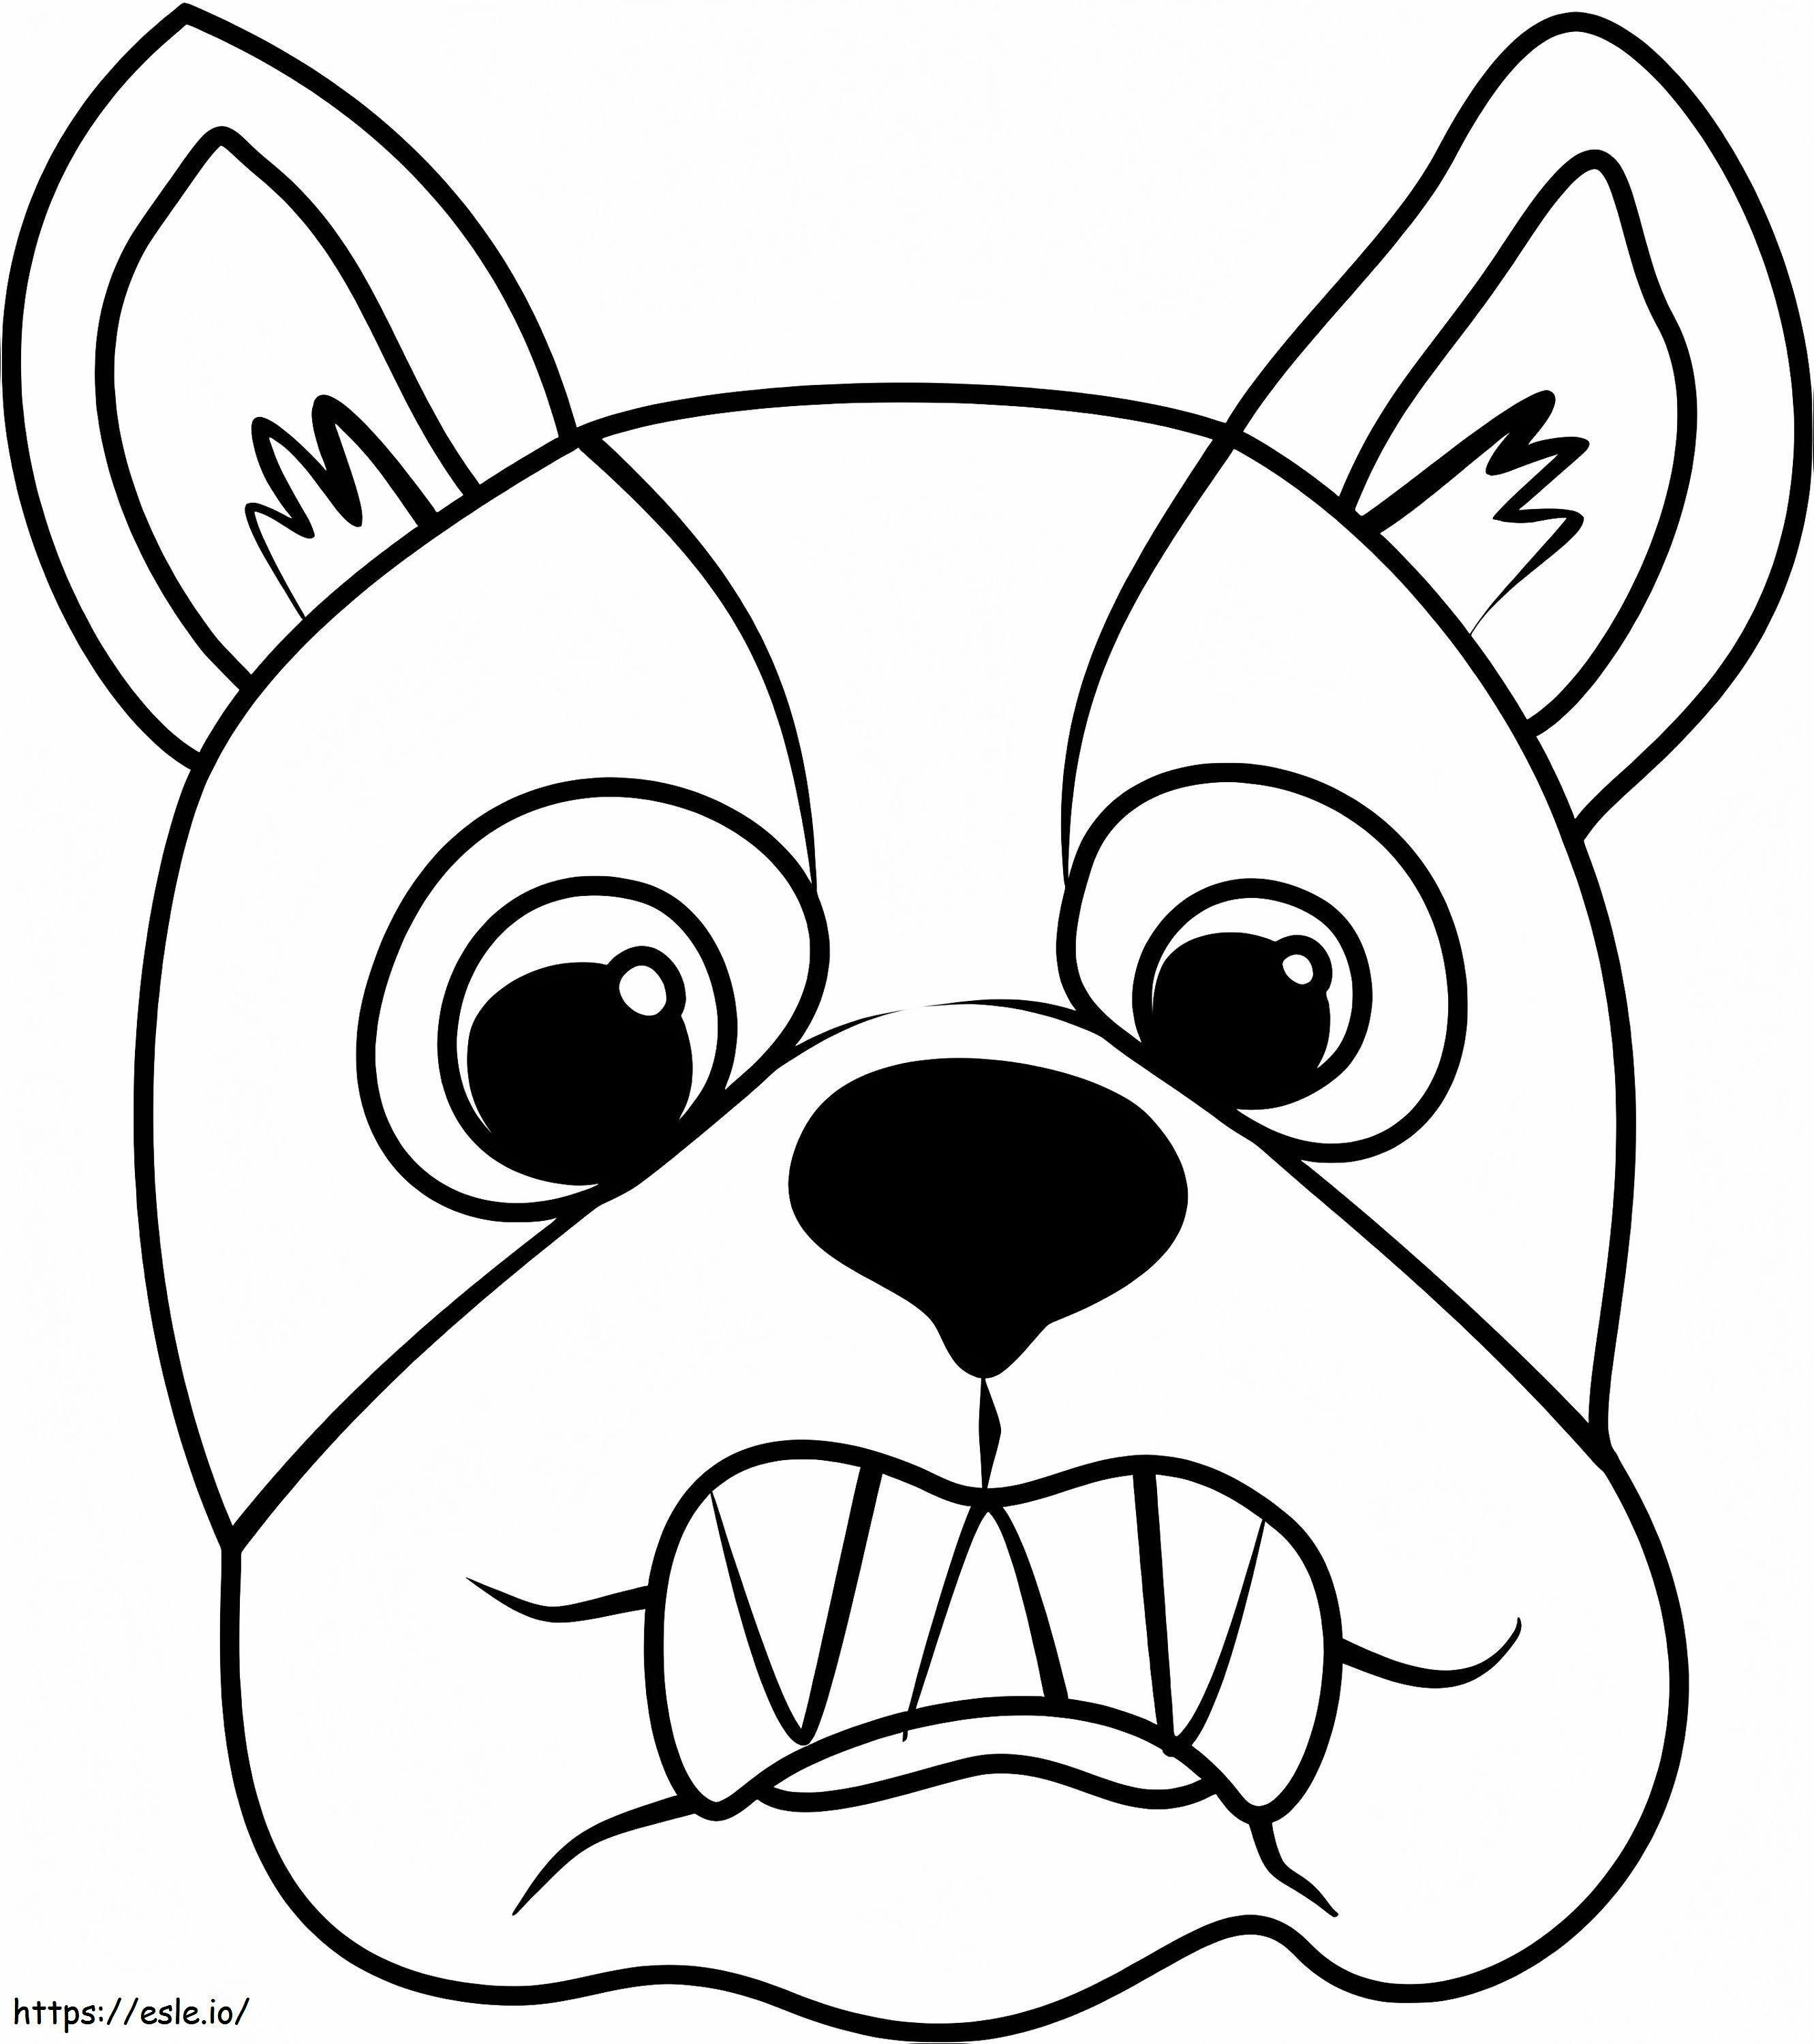 Desfile de mascotas con cara de bulldog francés para colorear